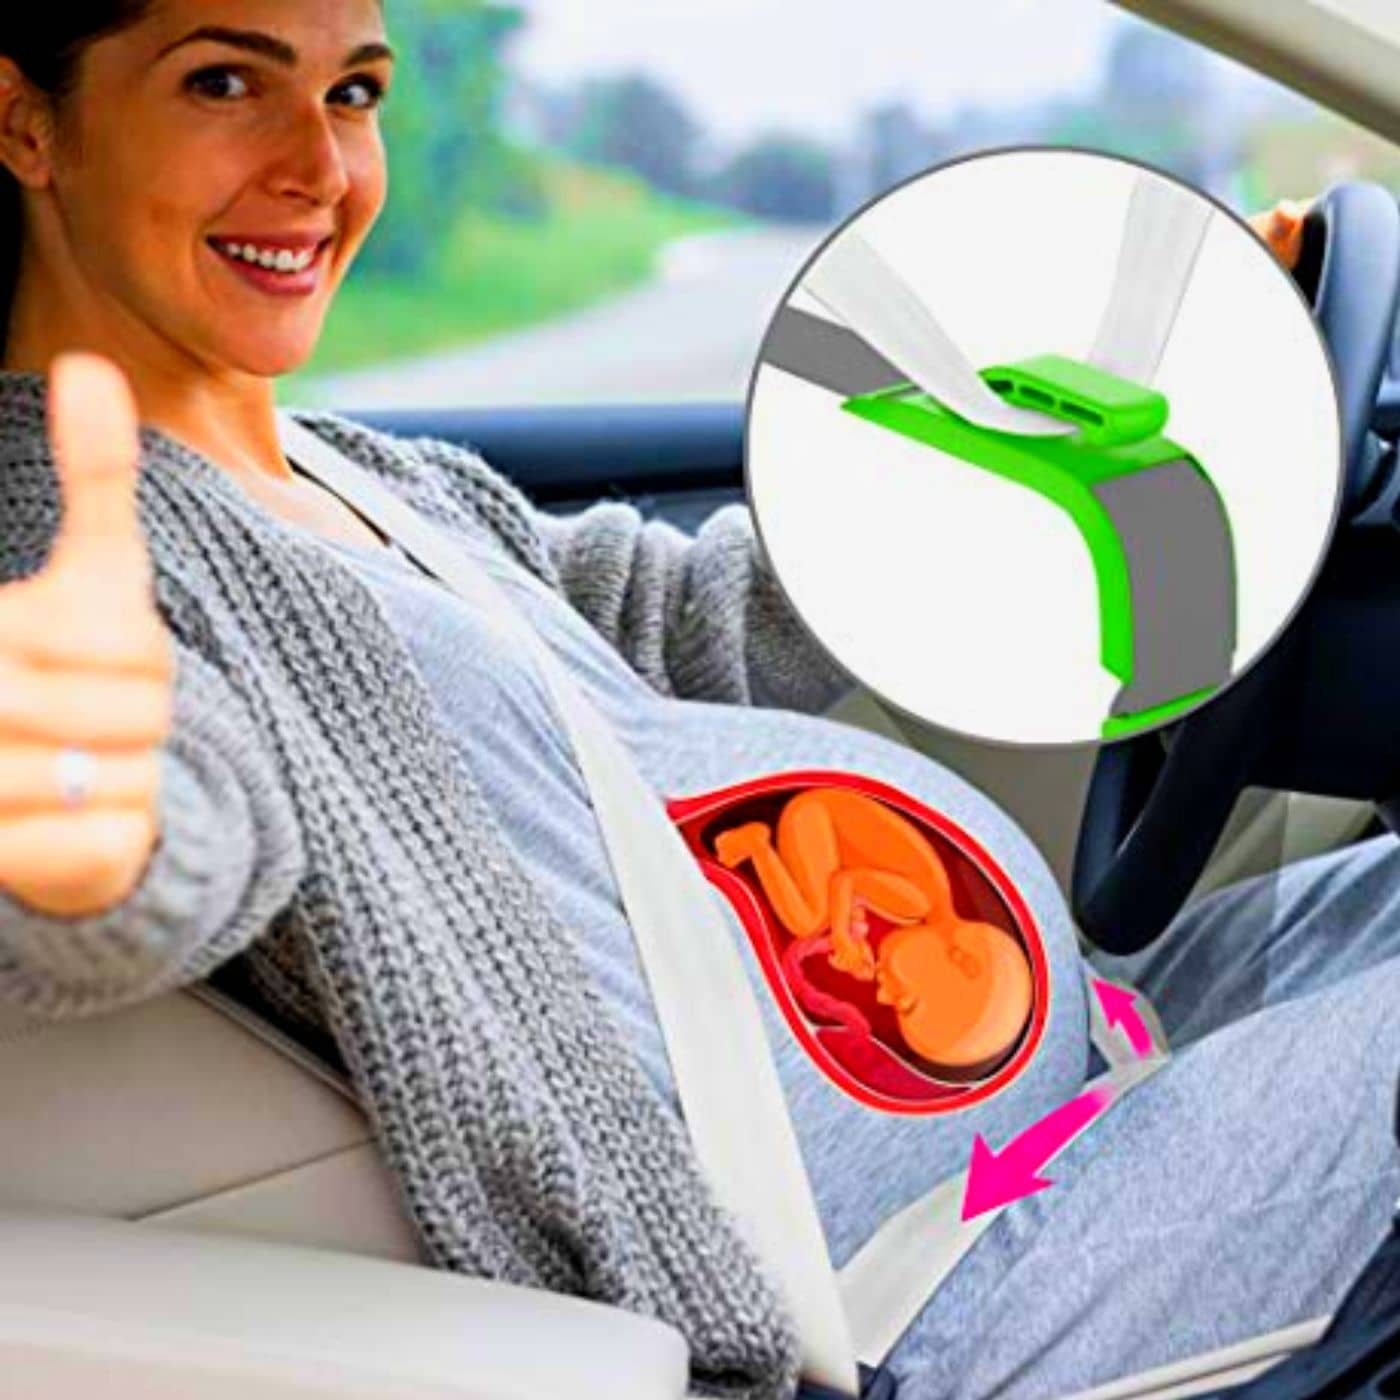 ComfortBelt™ ajusteur de ceinture de siège de voiture pour femmes ence